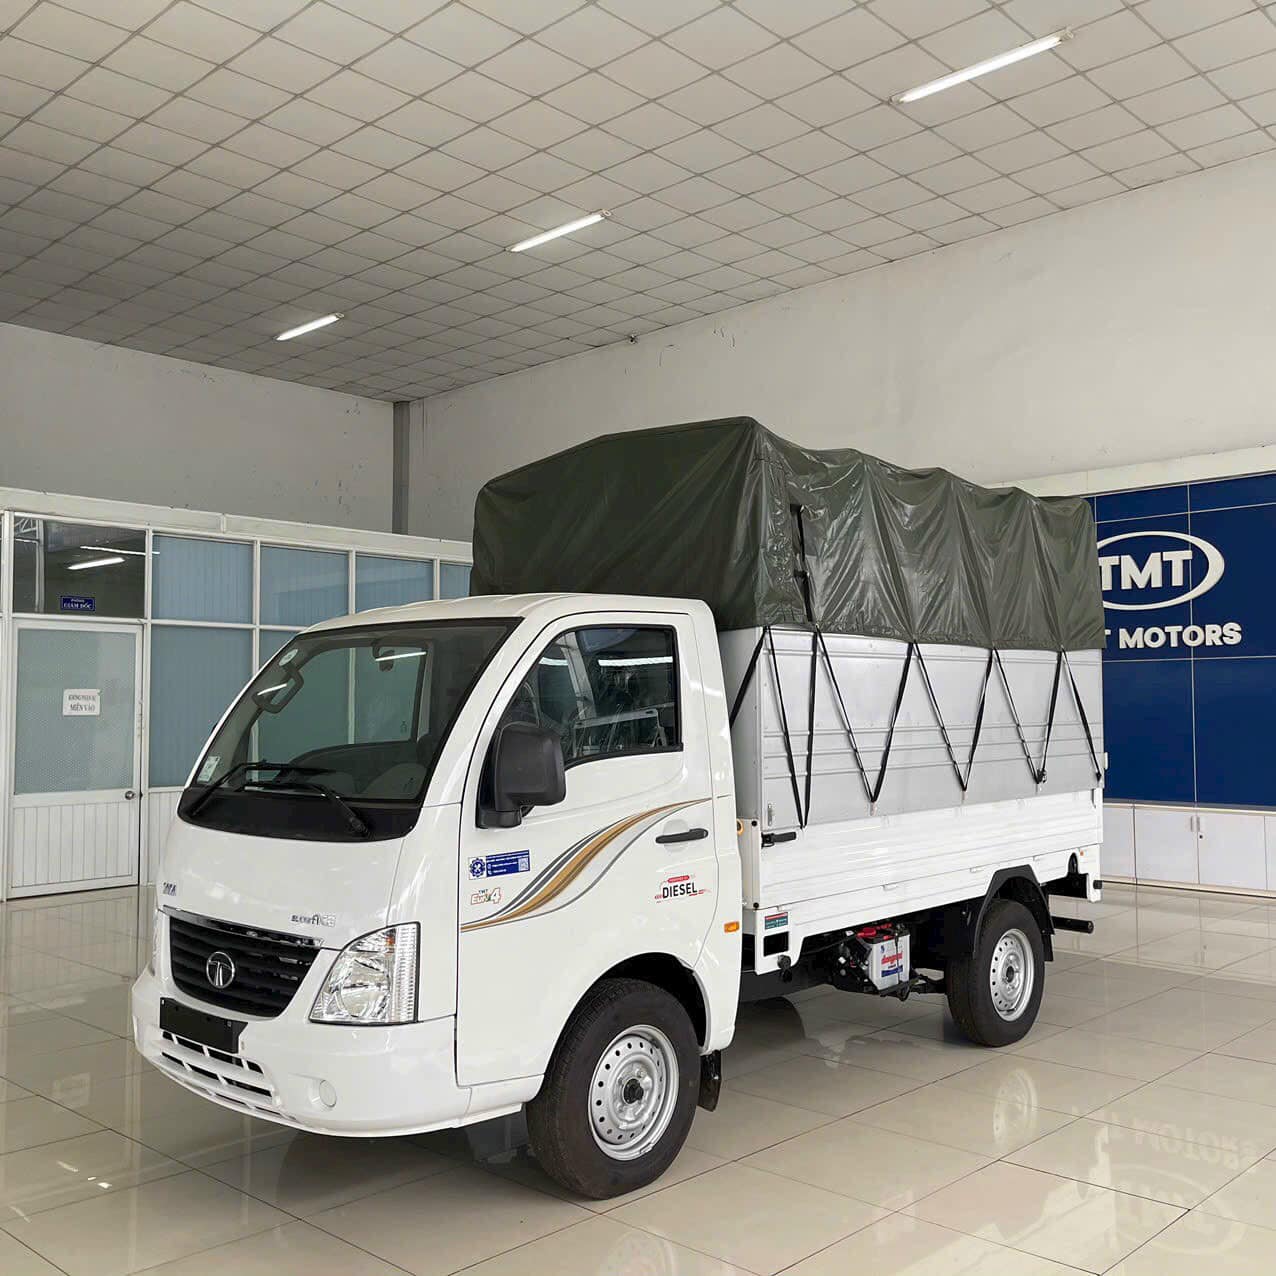 TƯ VẤN : Thay lốp xe tải Tata Super ACE ở Long Thành, Đồng Nai.